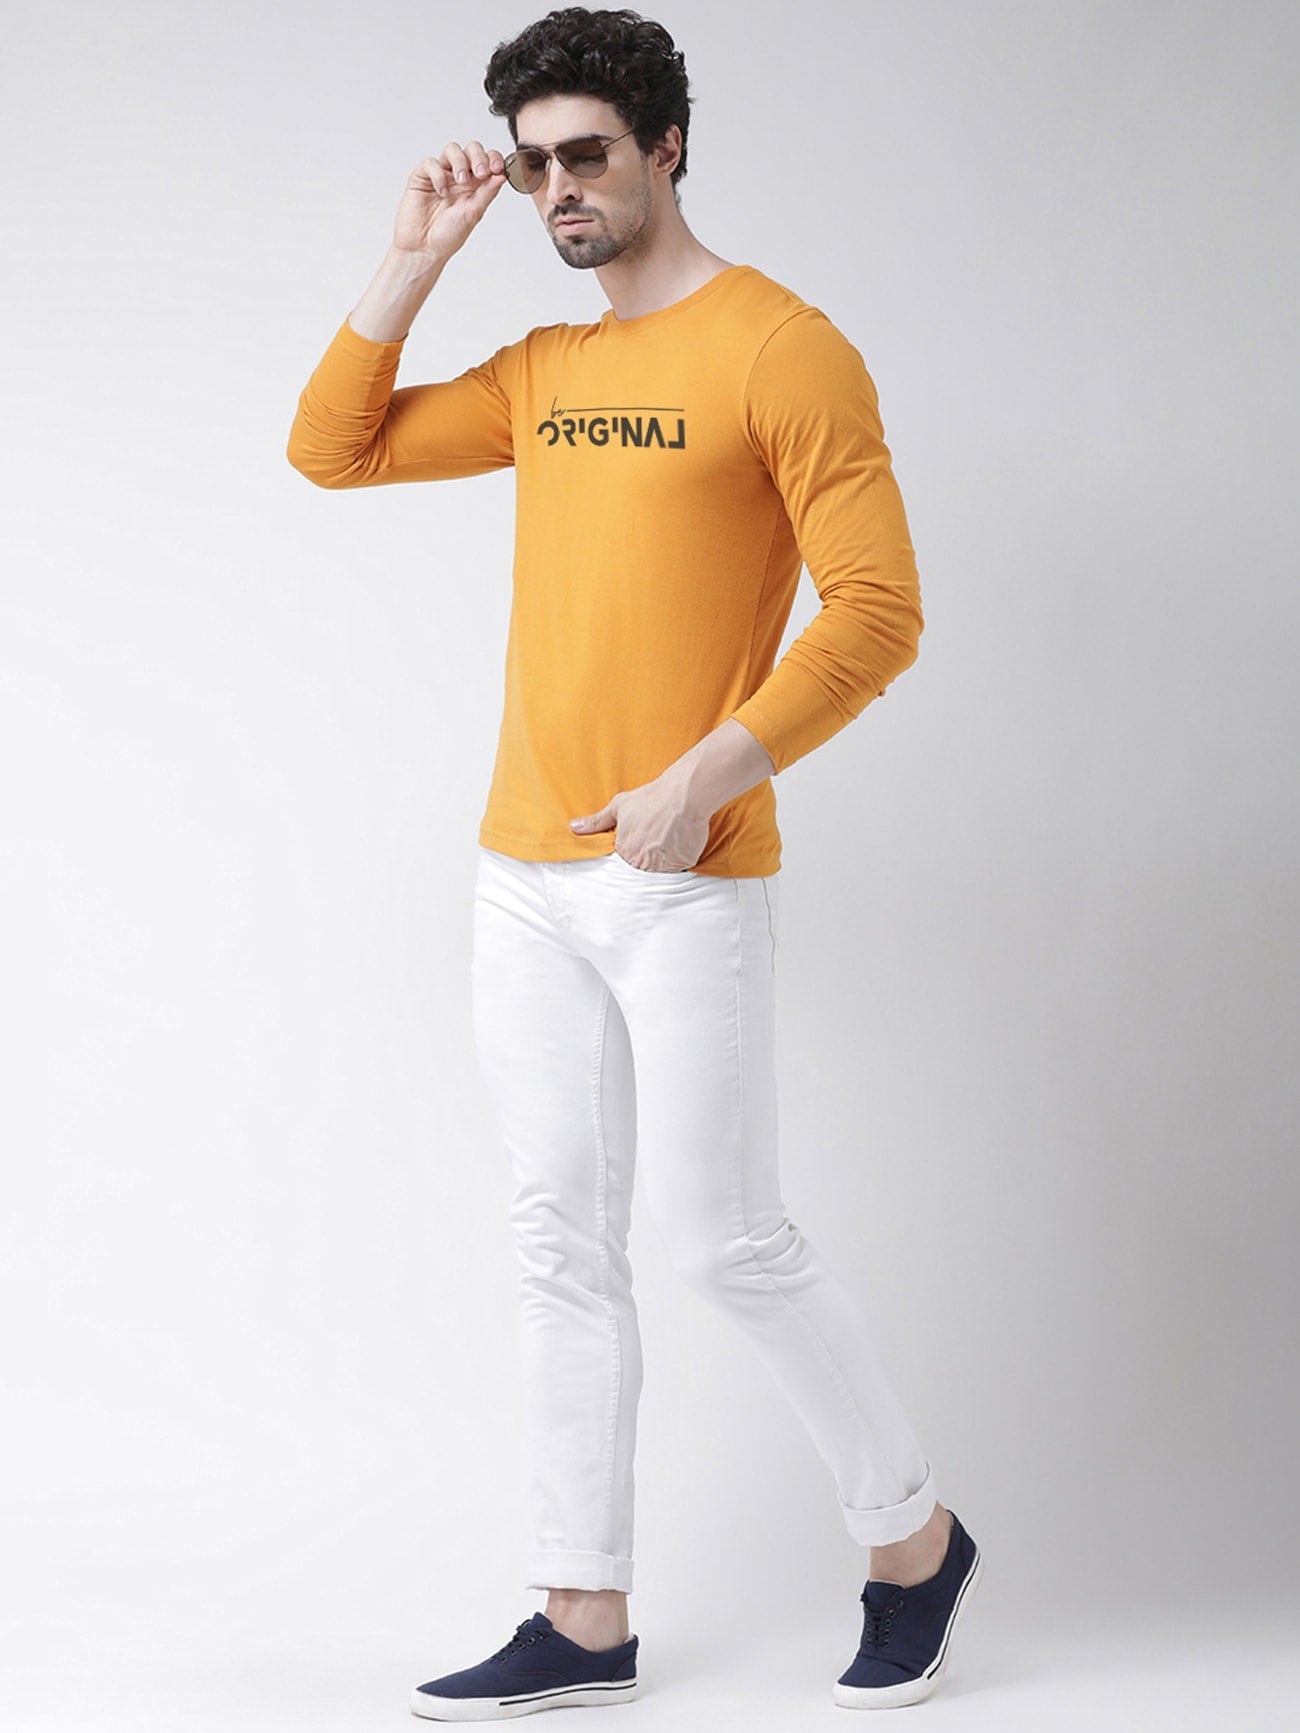 Men Original printed Full Sleeve T-shirt - Friskers